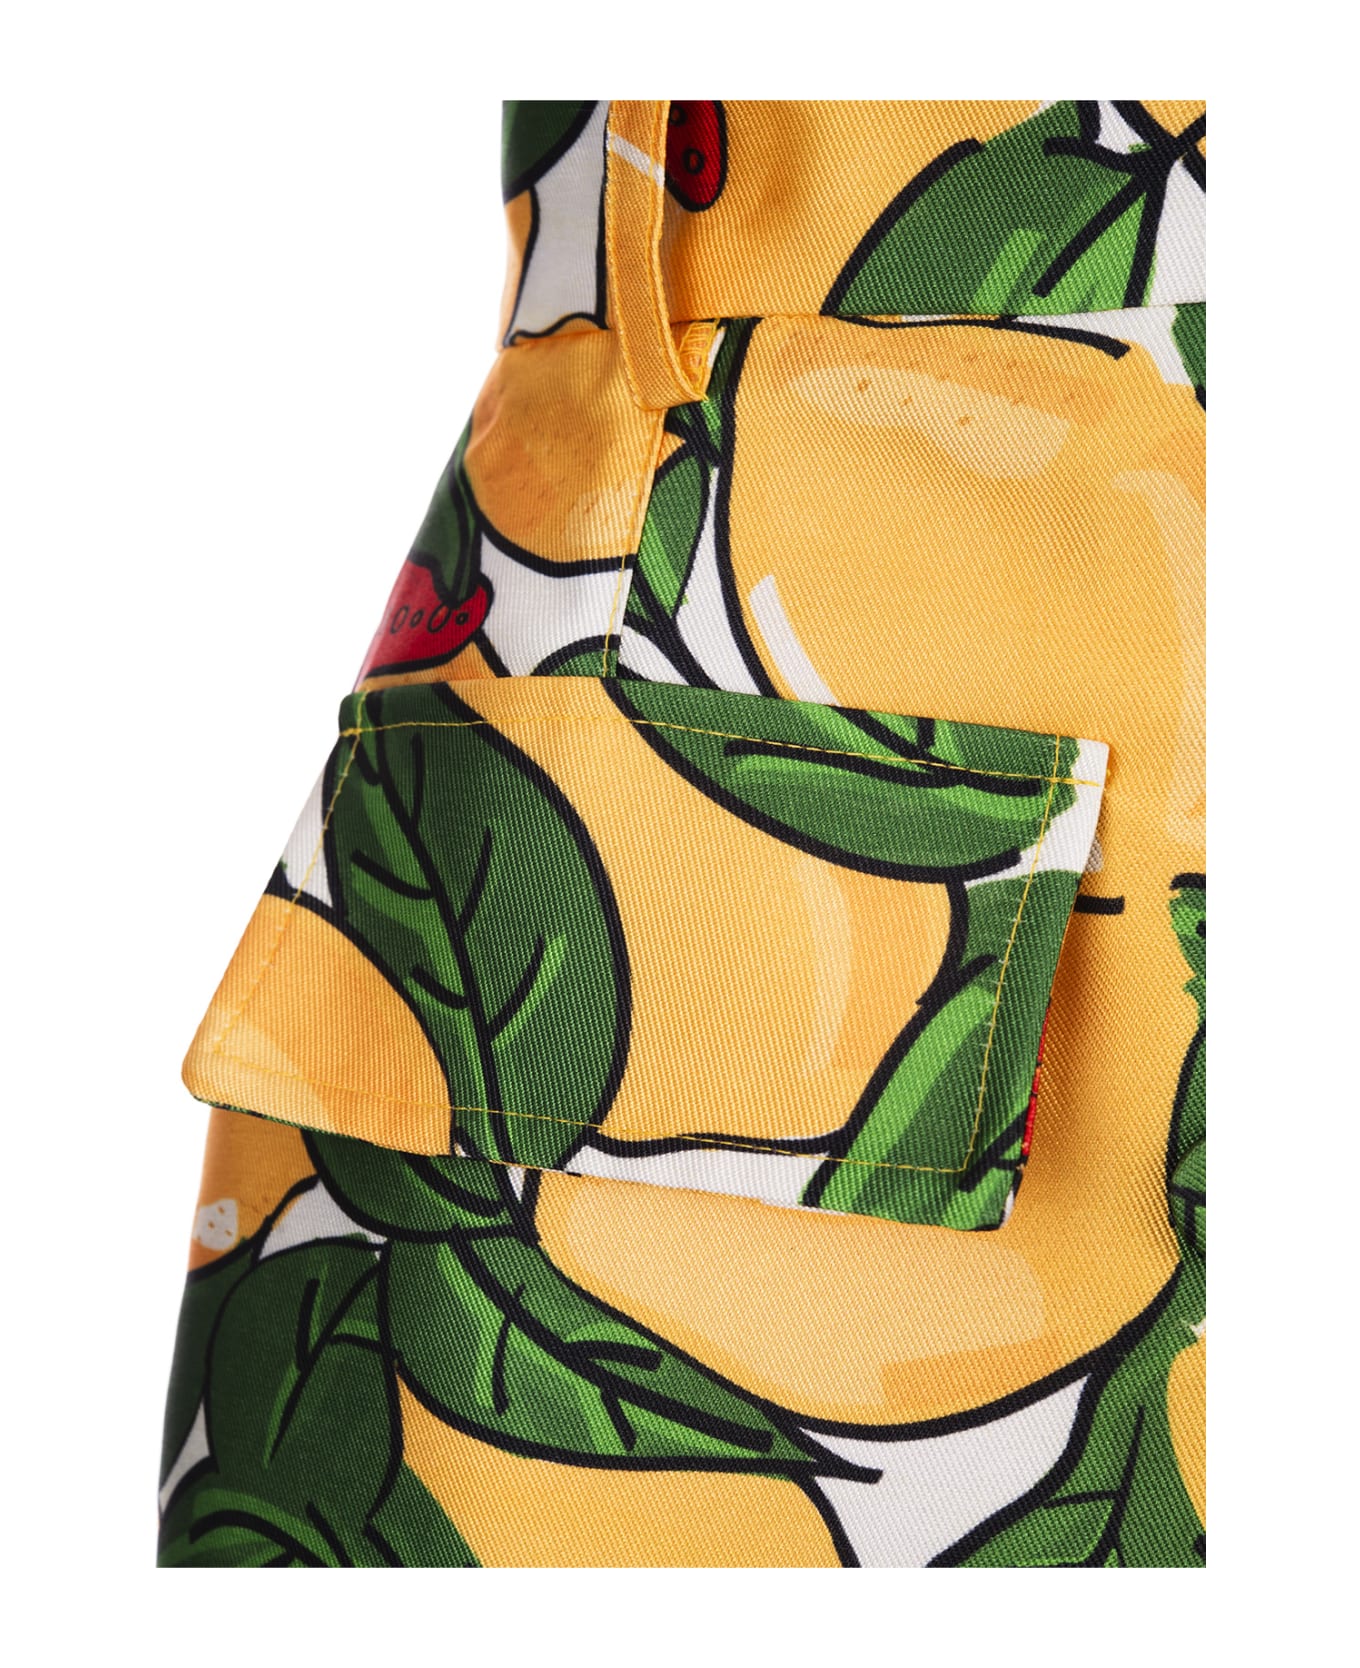 Alessandro Enriquez Short Skirt With Lemons Print - Green